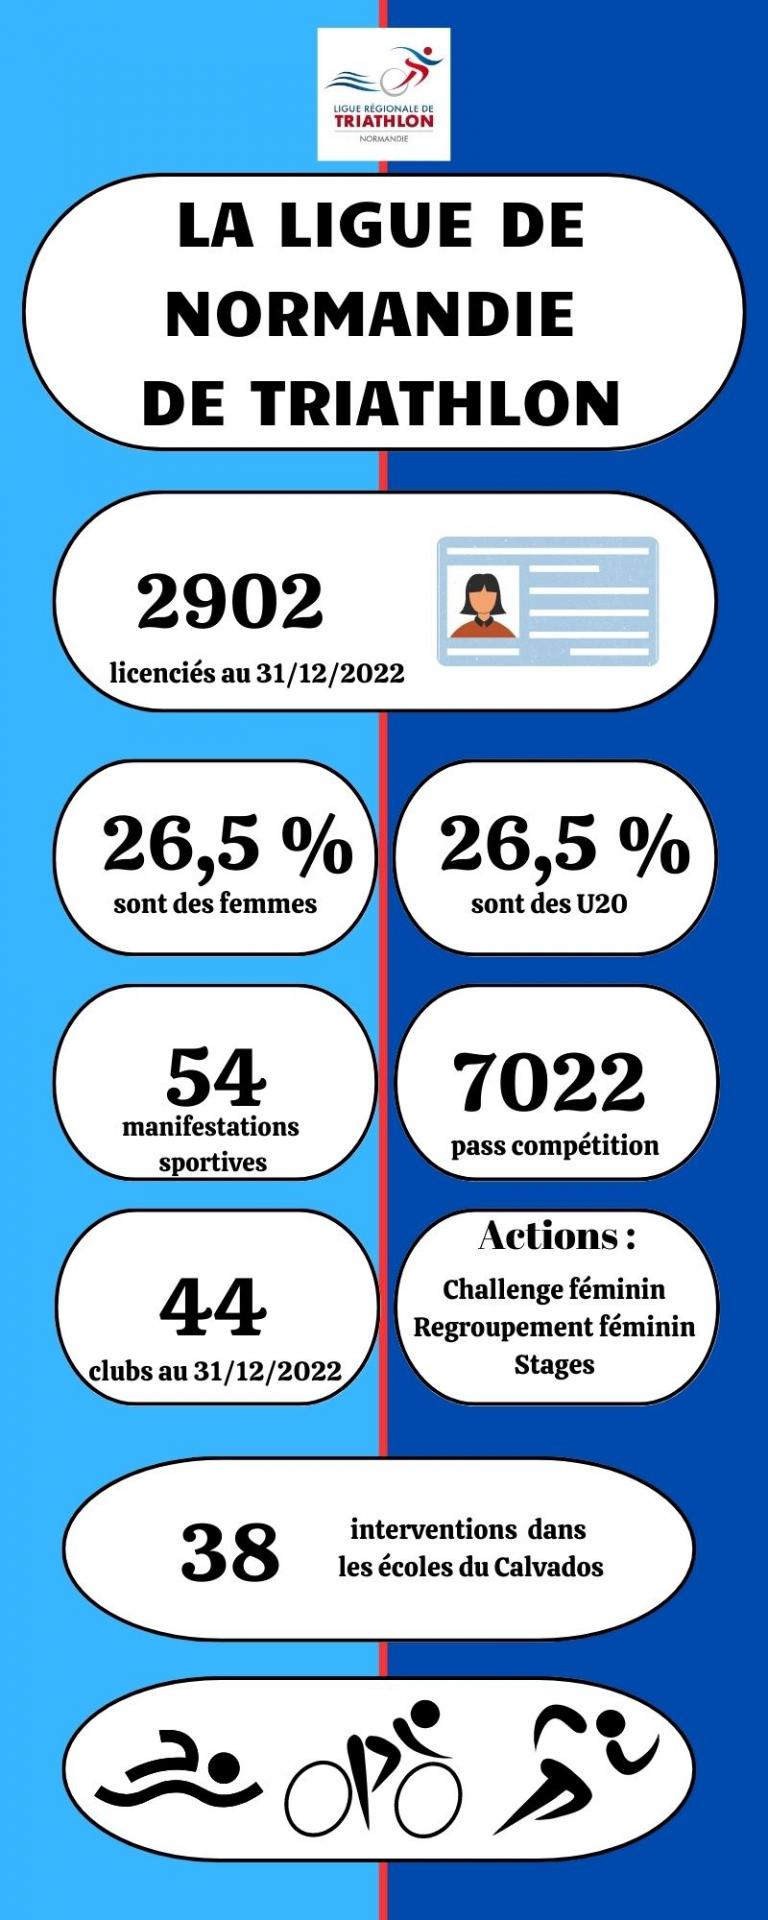 La ligue de Normandie de triathlon infographie